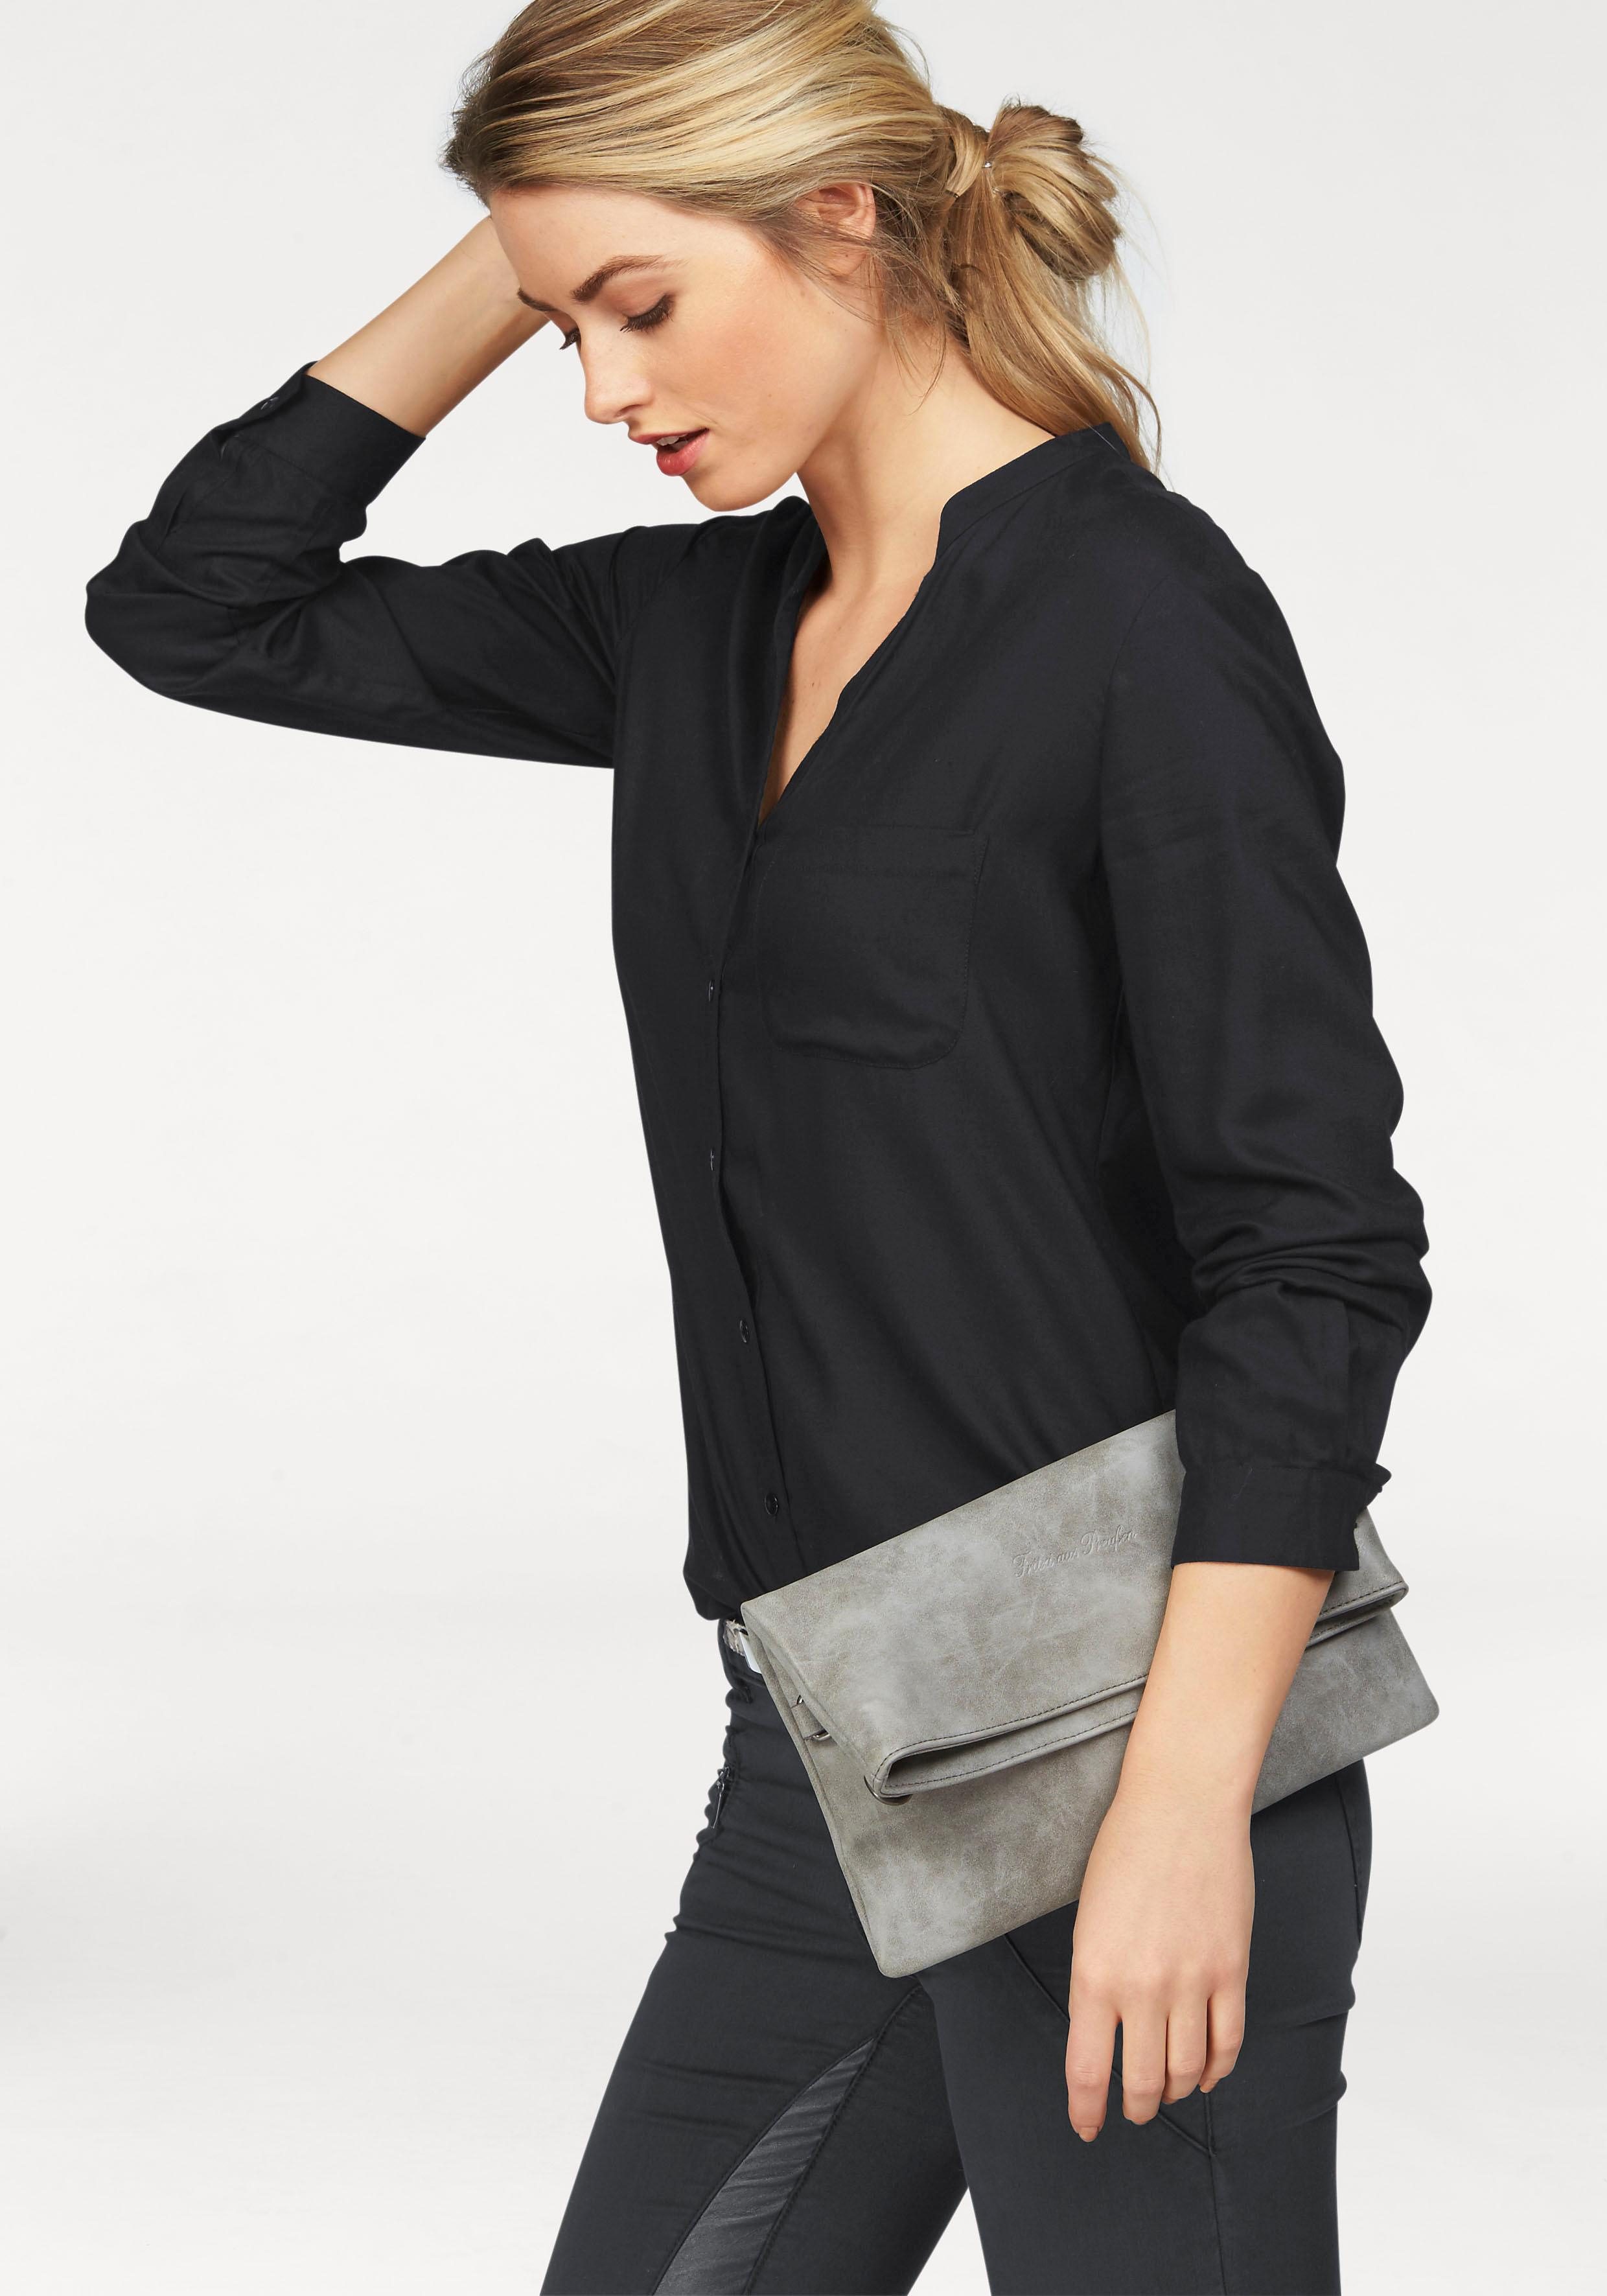 Schwarze Bluse online kaufen | OTTO